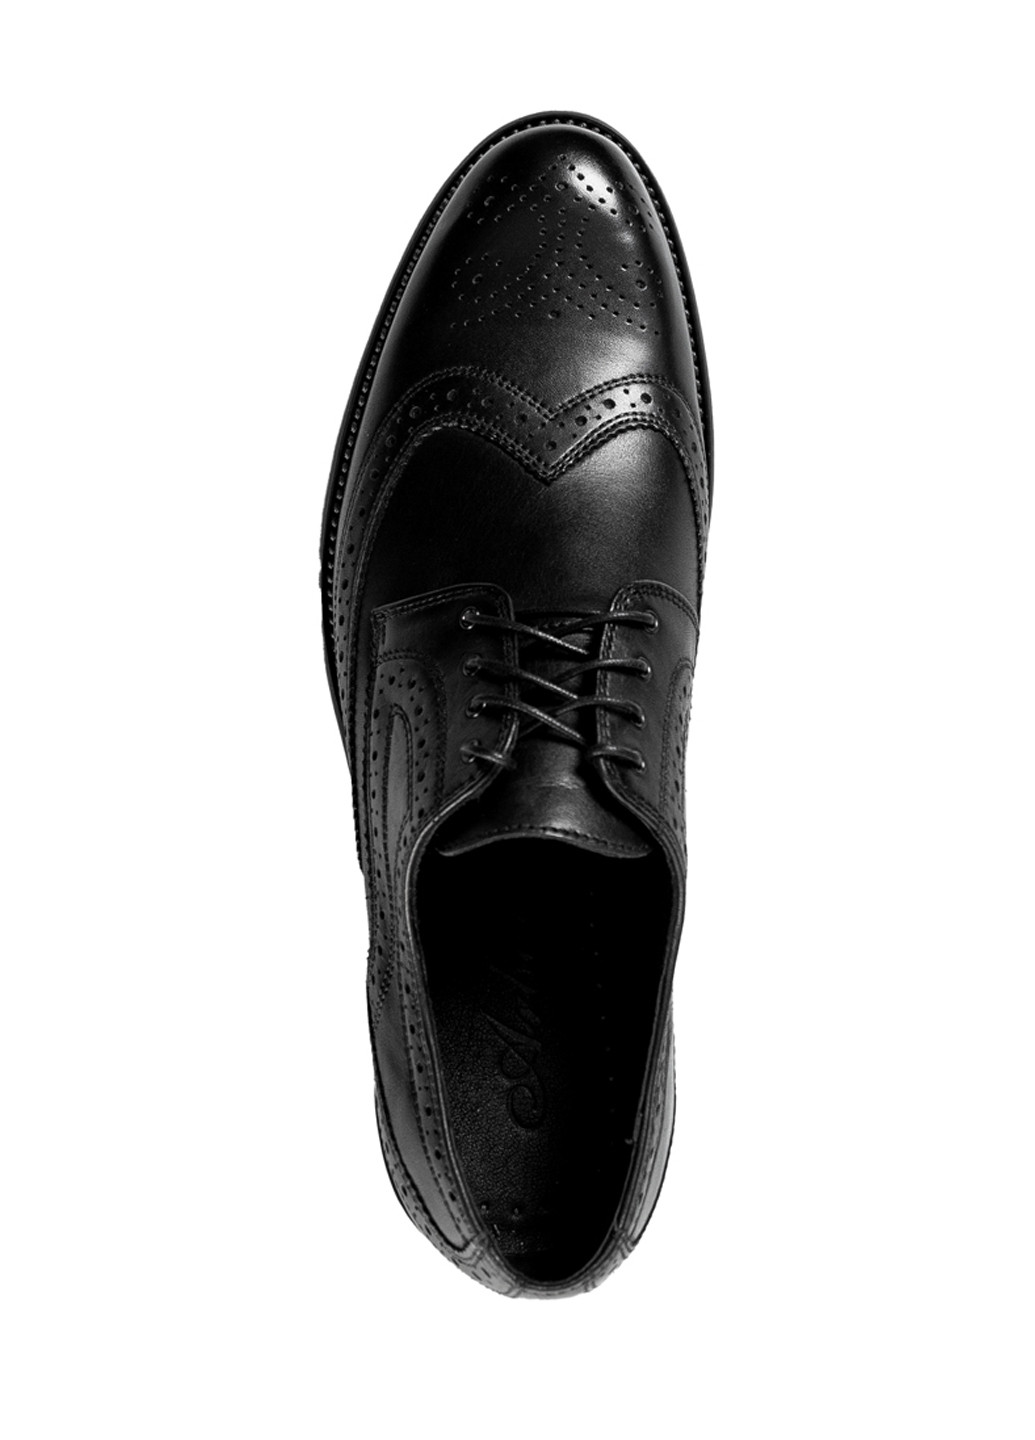 Черные туфли мужские Arber